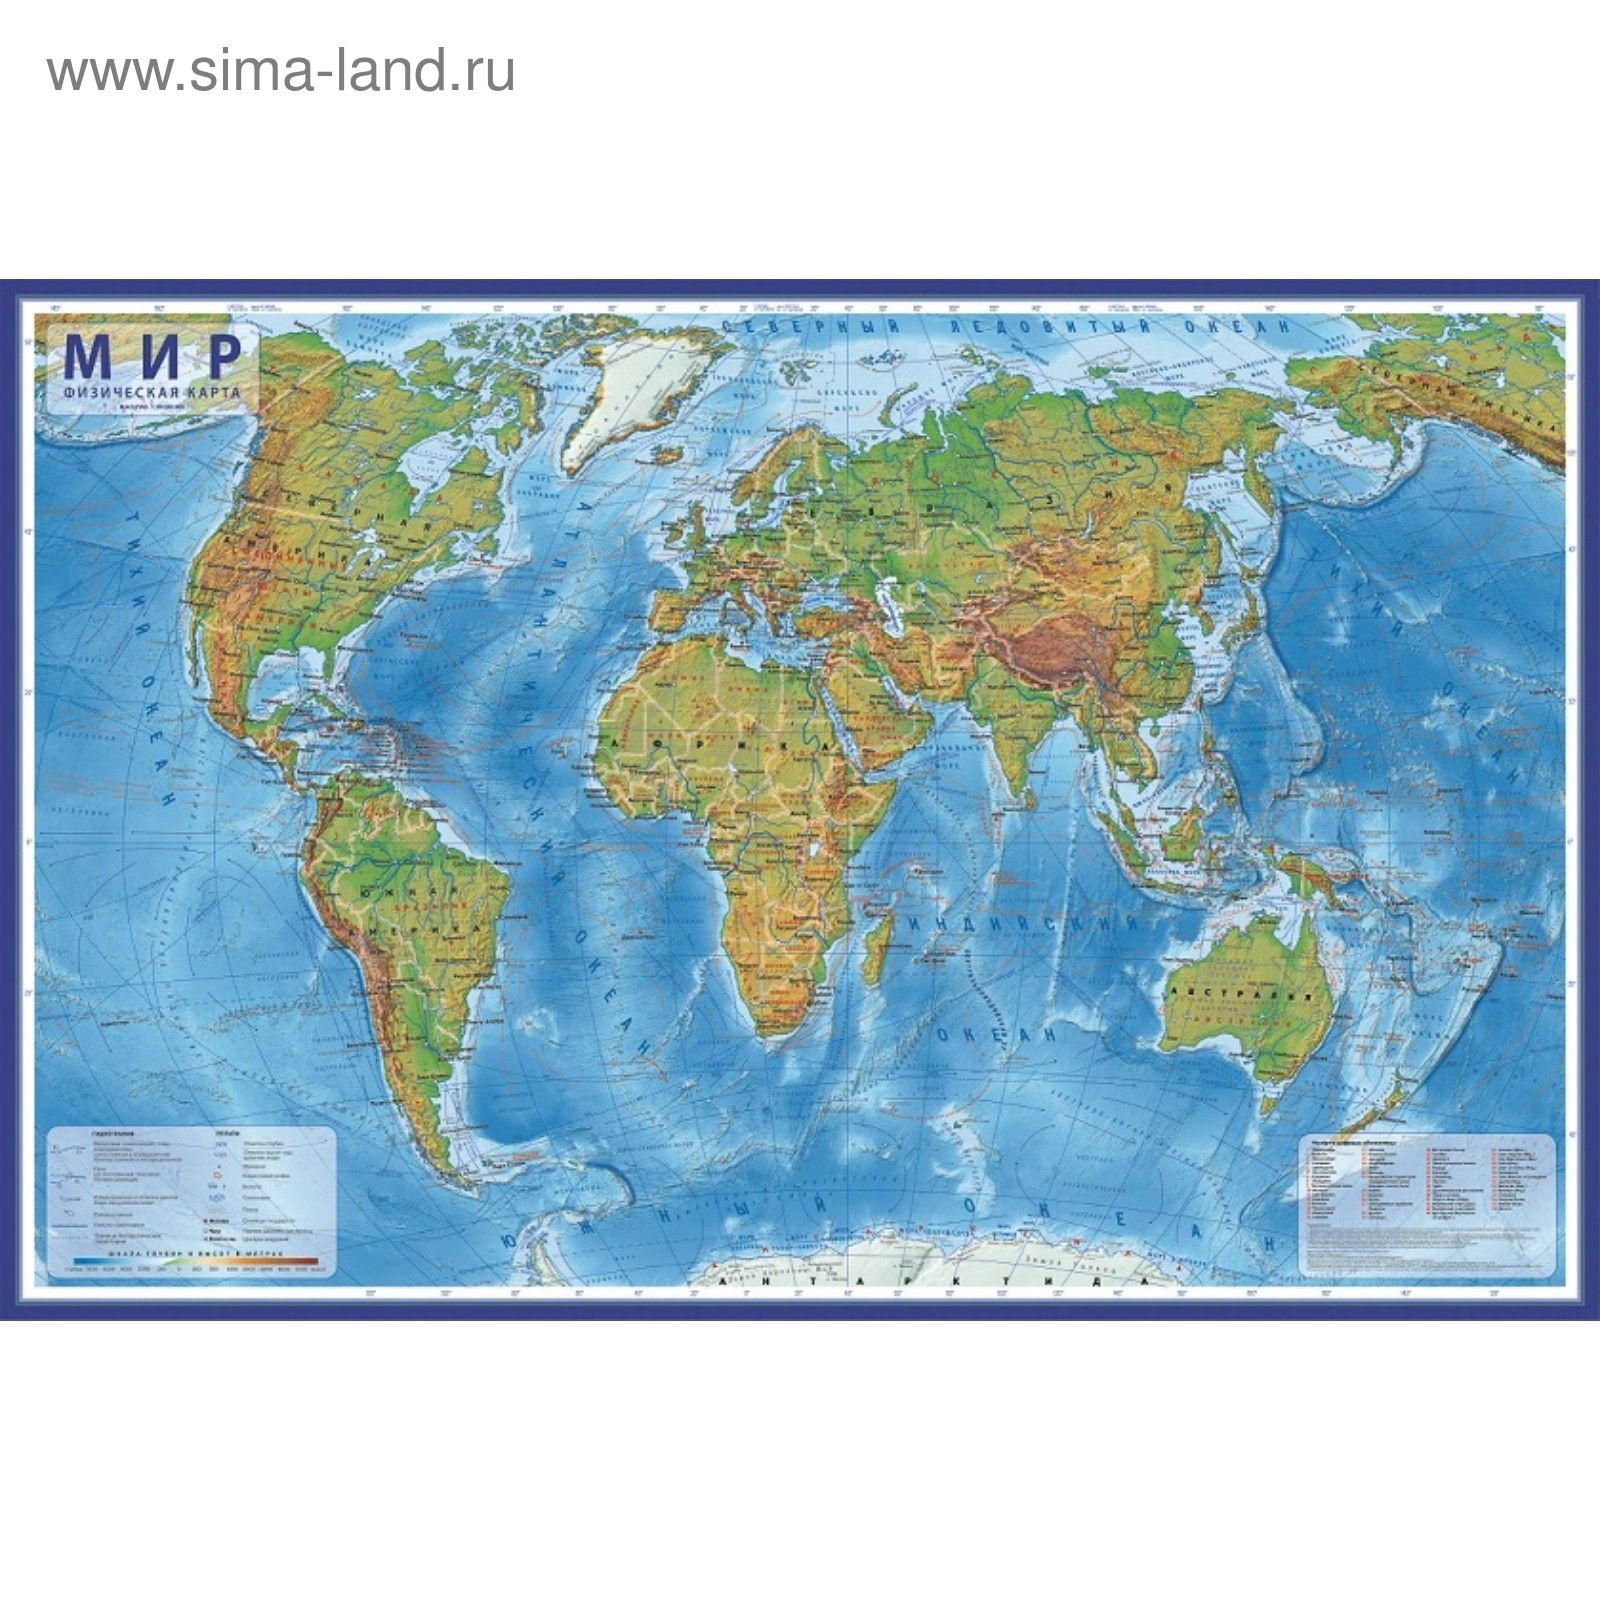 Карта Мира физическая, 120 х 78 см, 1:25 млн, ламинированная (КН048) -Купить по цене от 318.00 руб.